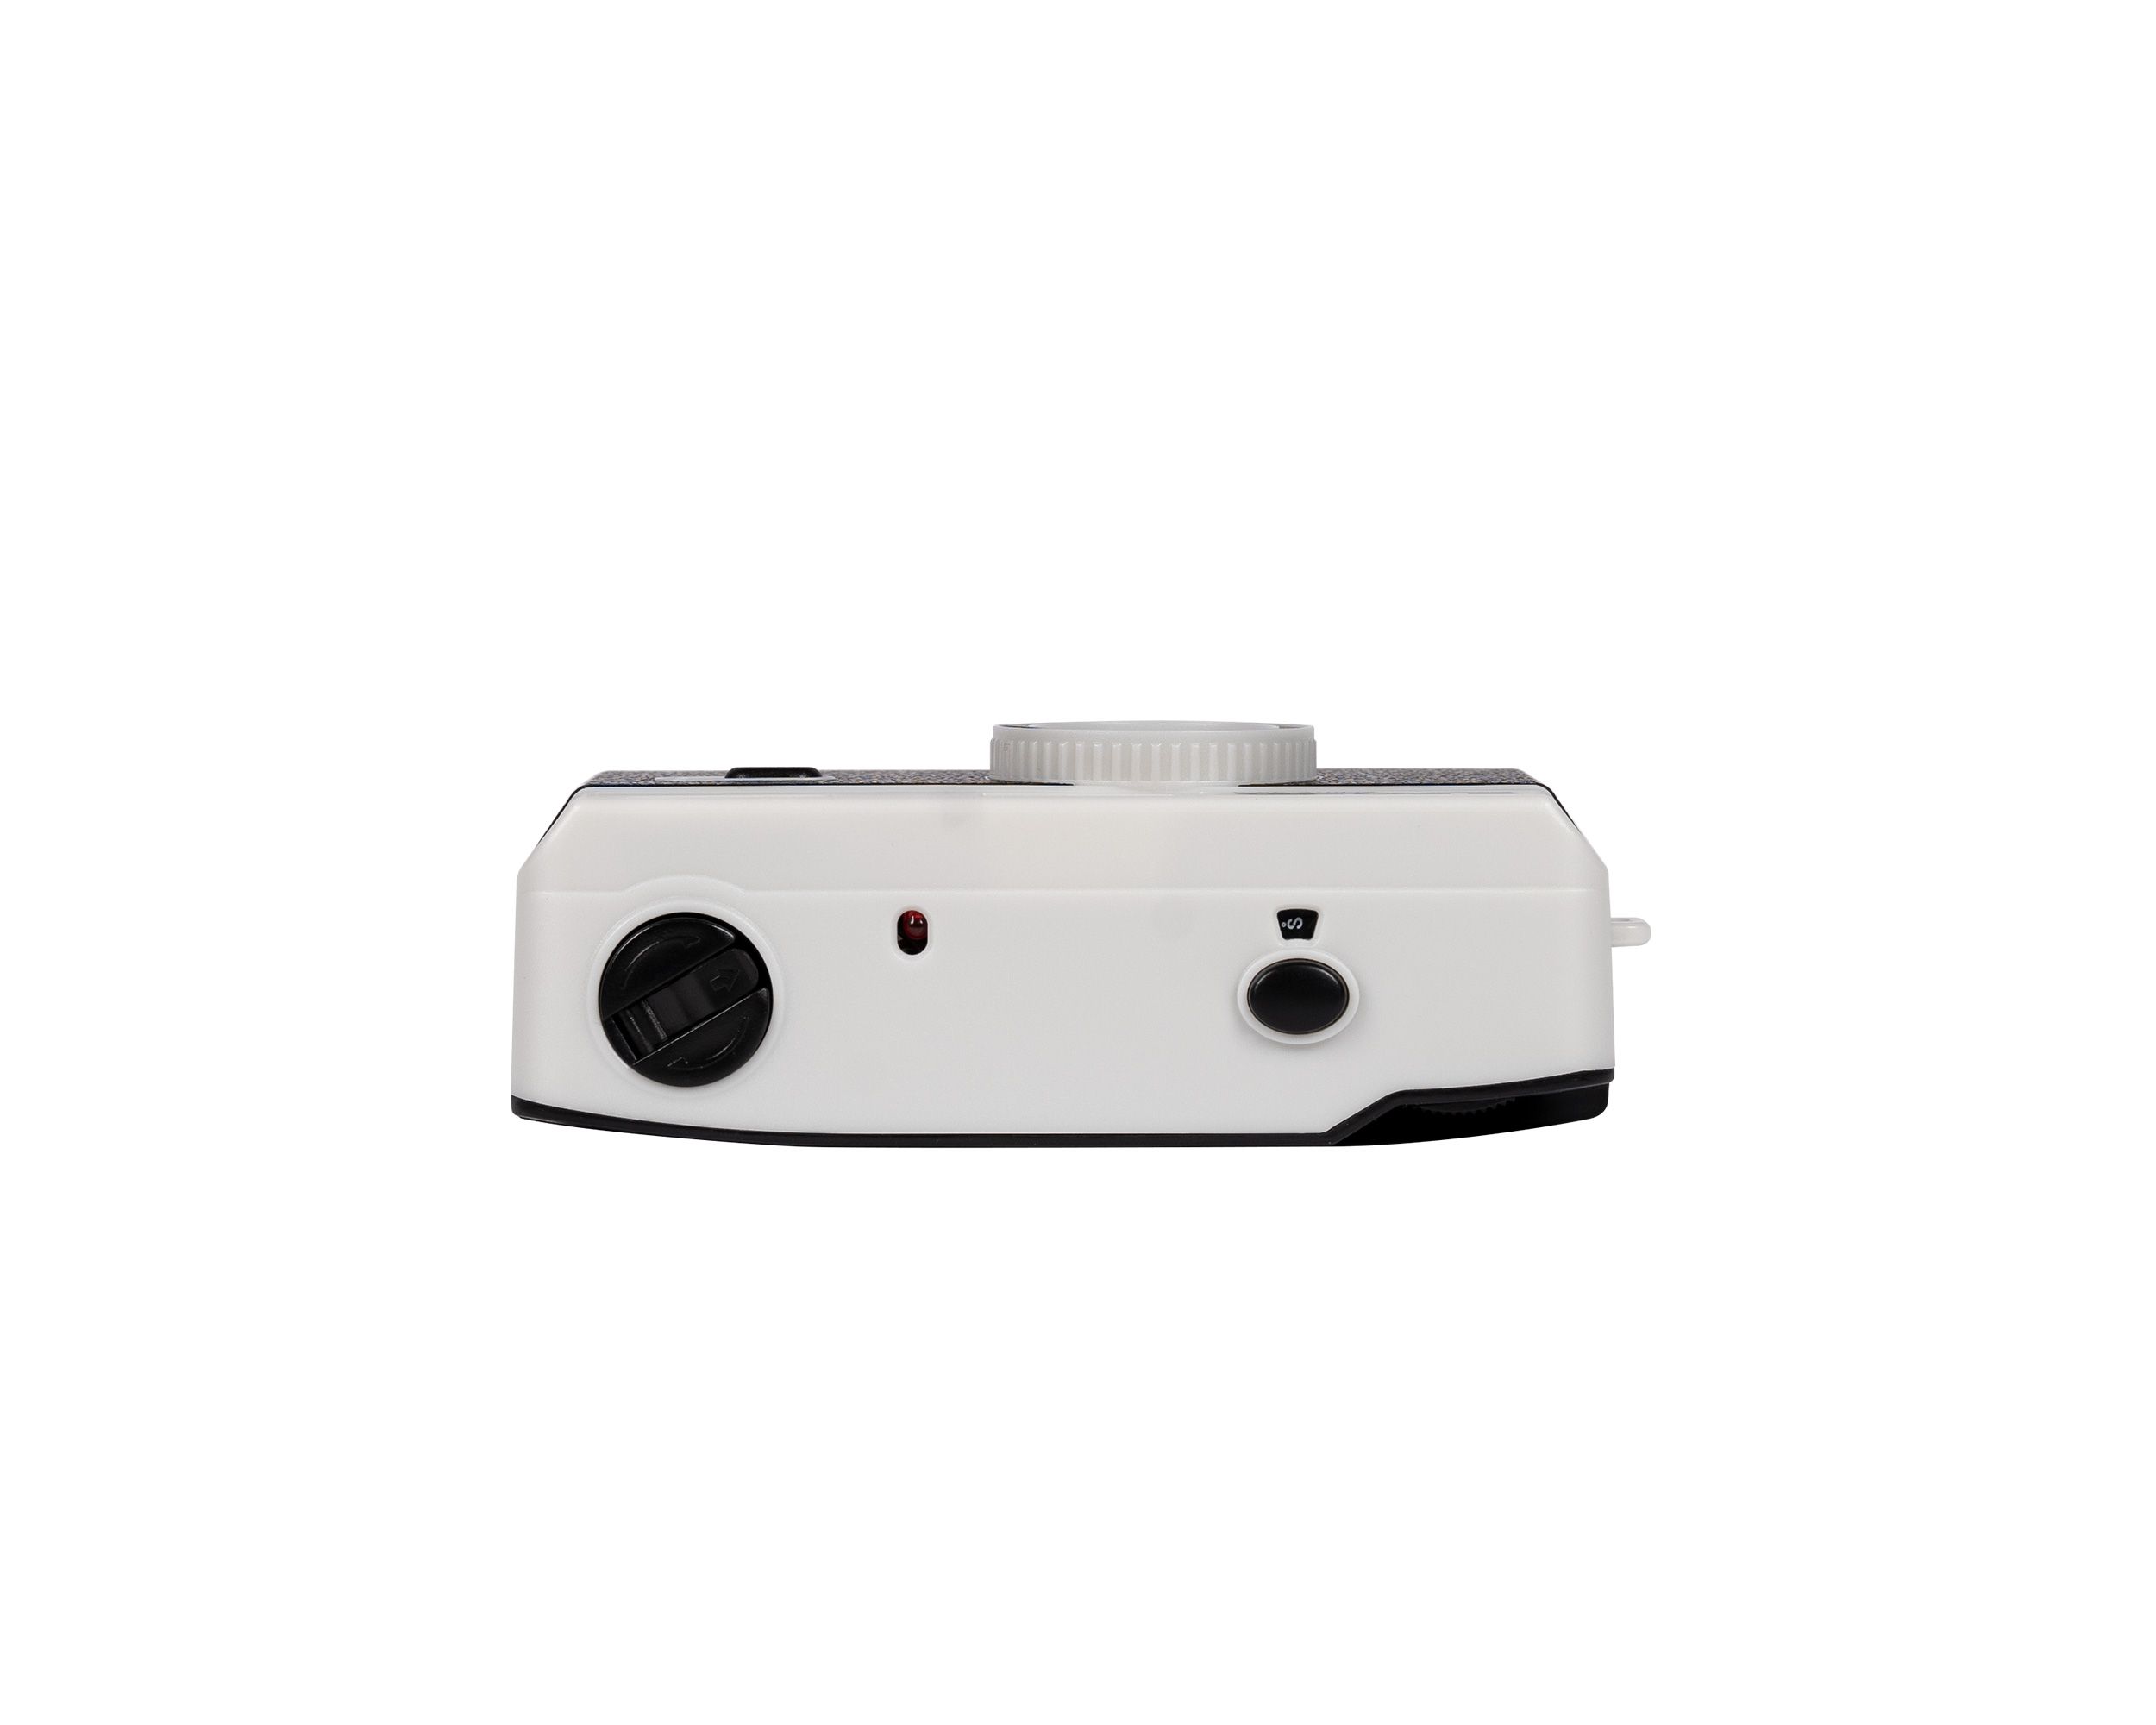 Ilford SPRITE 35-II Reusable Camera - Classic Black & Silver